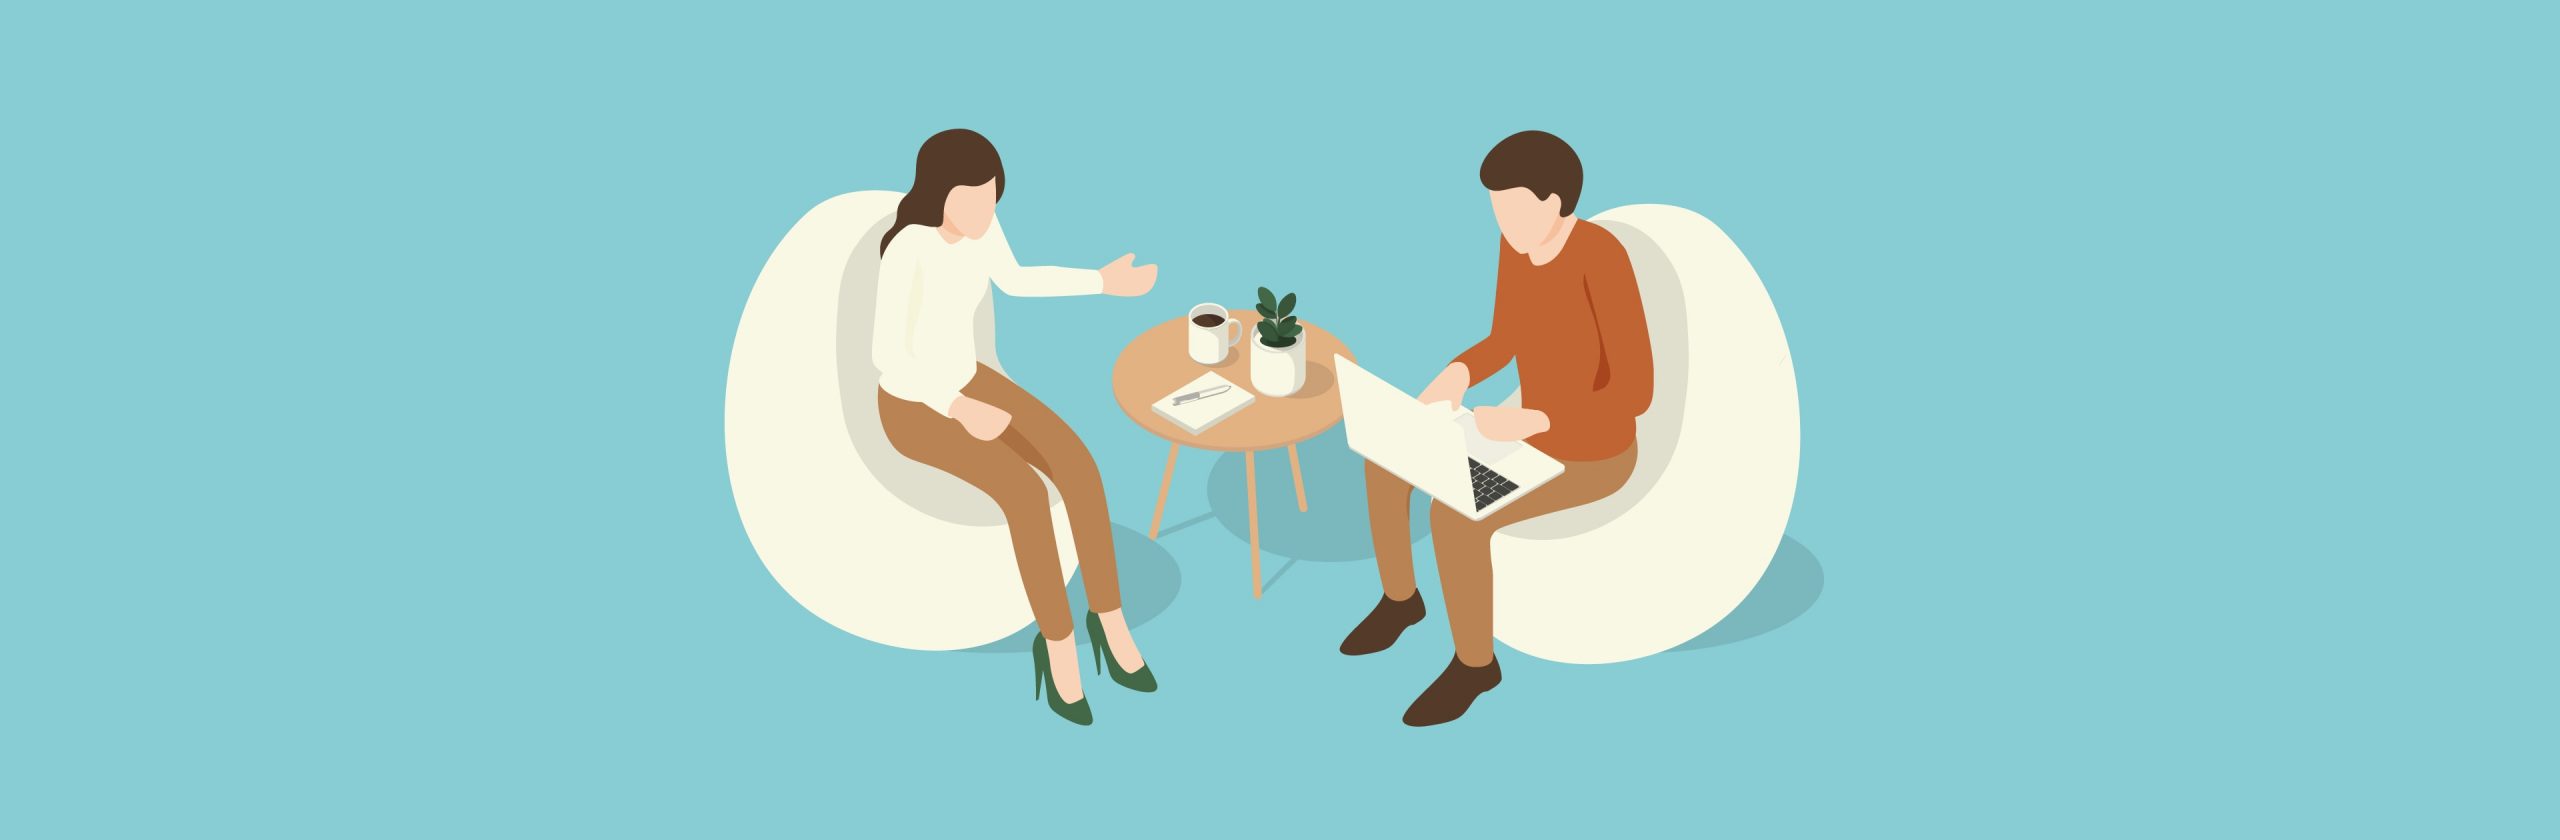 Eine Illustration von zwei Menschen, die sich gegenüber sitzen und ein Gespräch führen